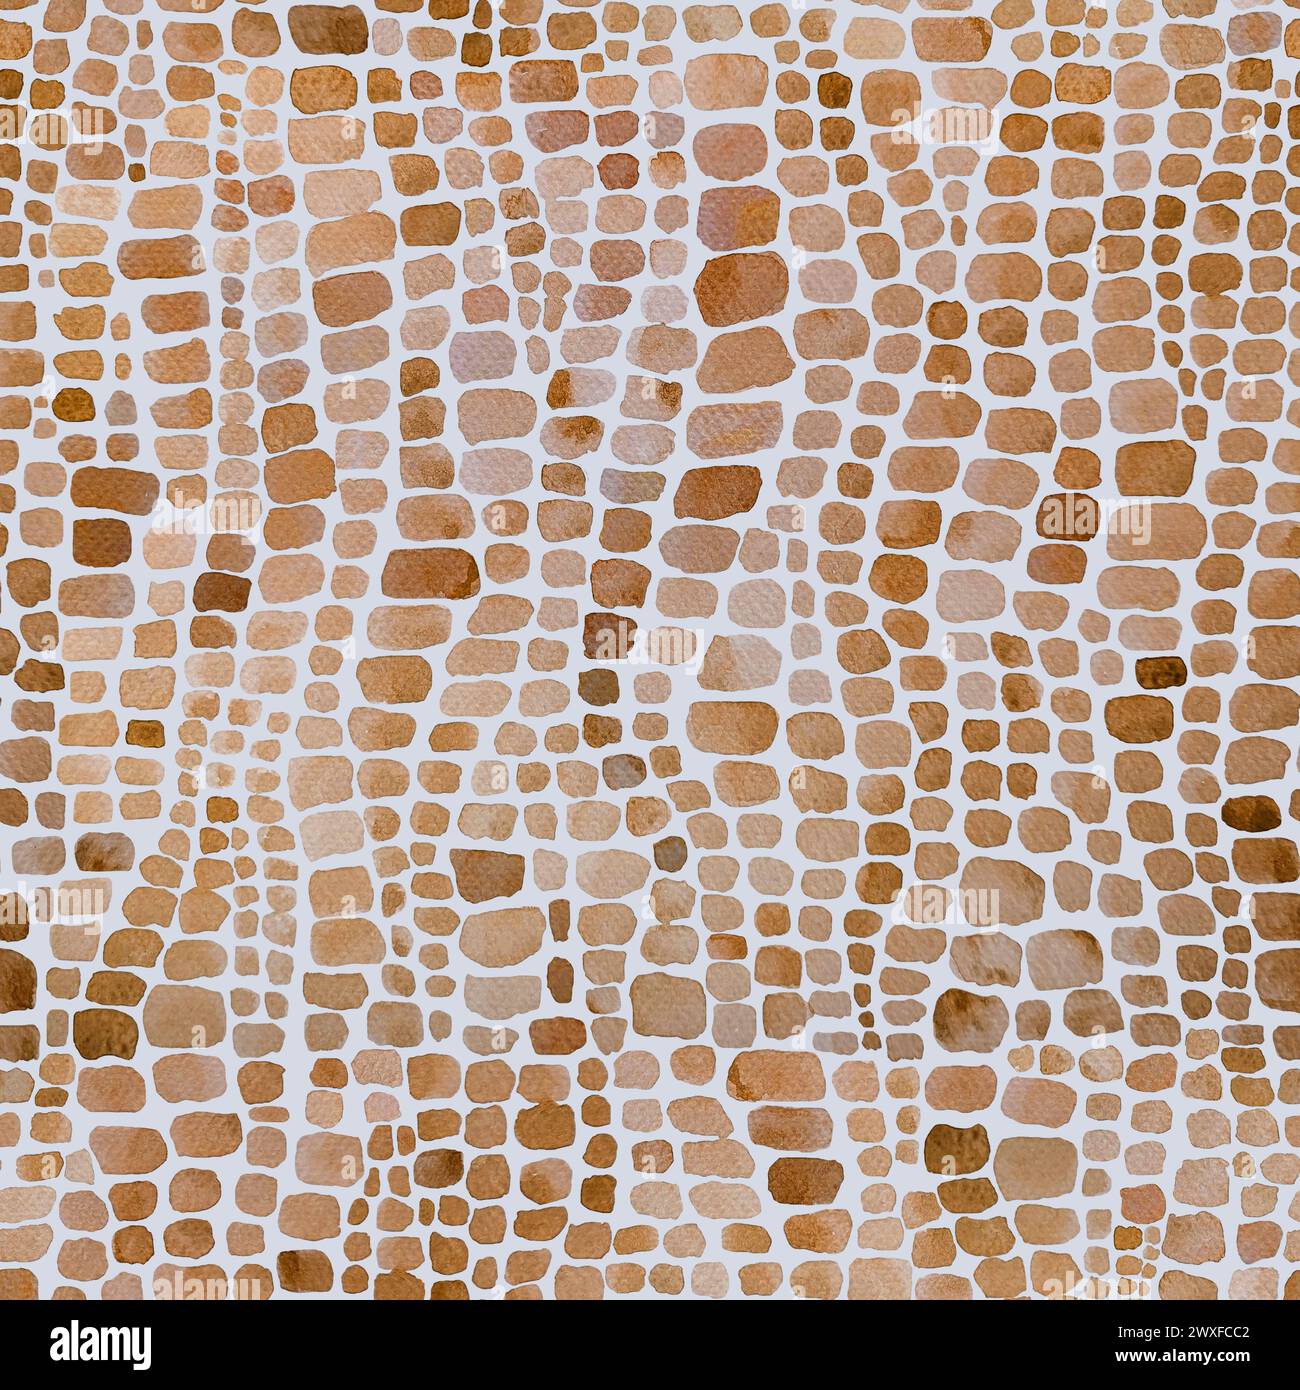 Abstracto cocodrilo reptil escamas marrón y blanco acuarela fondo sin fisuras. Acuarela dibujado a mano piel animal escala mosaico de impresión. Geométrica t Foto de stock